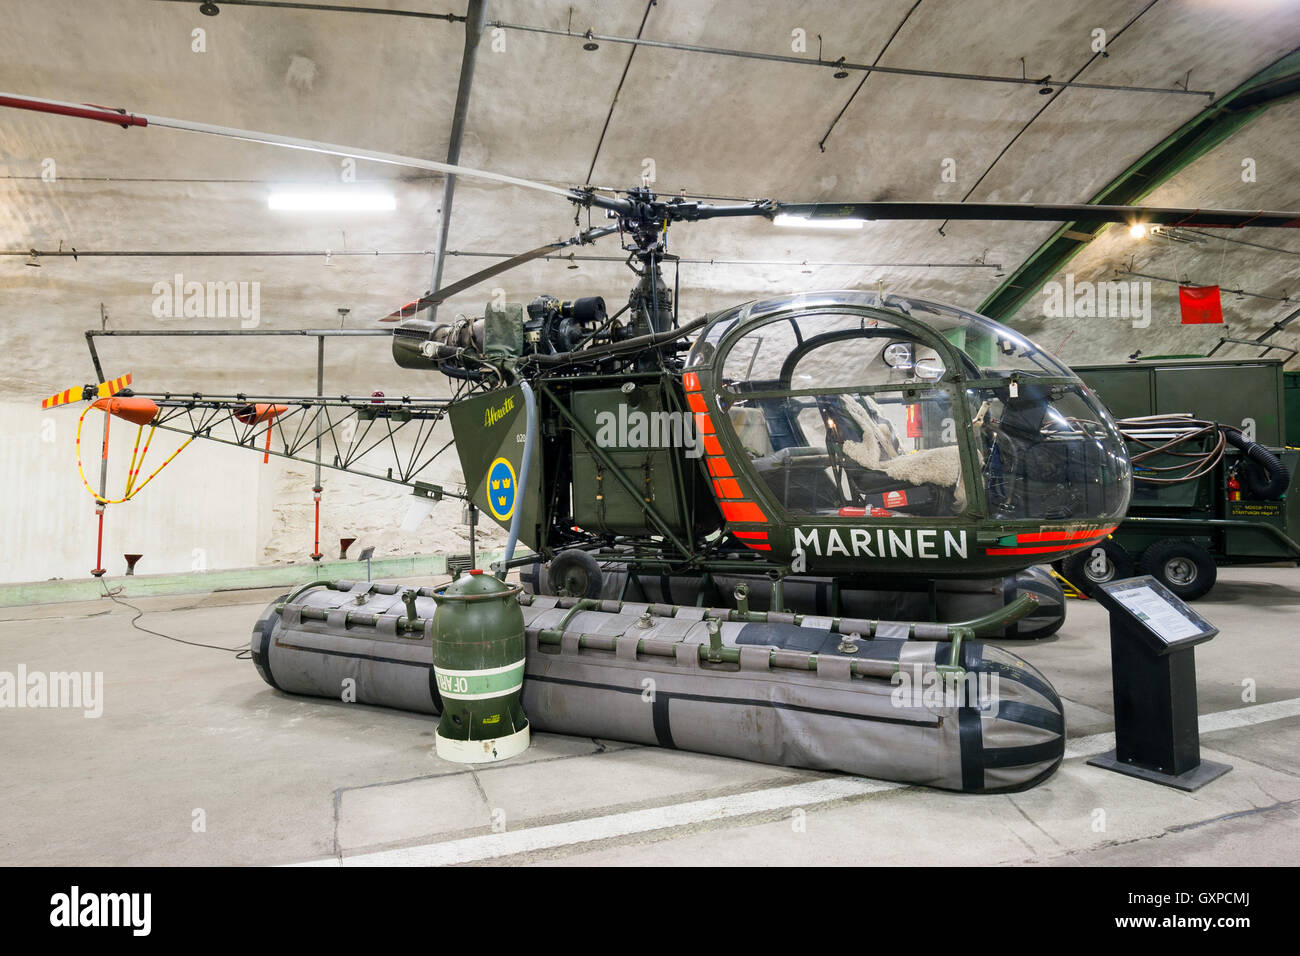 La marine suédoise hélicoptère Alouette II dans le Aeroseum Musée de l'aviation militaire dans une vieille base souterraine près de Göteborg. Banque D'Images